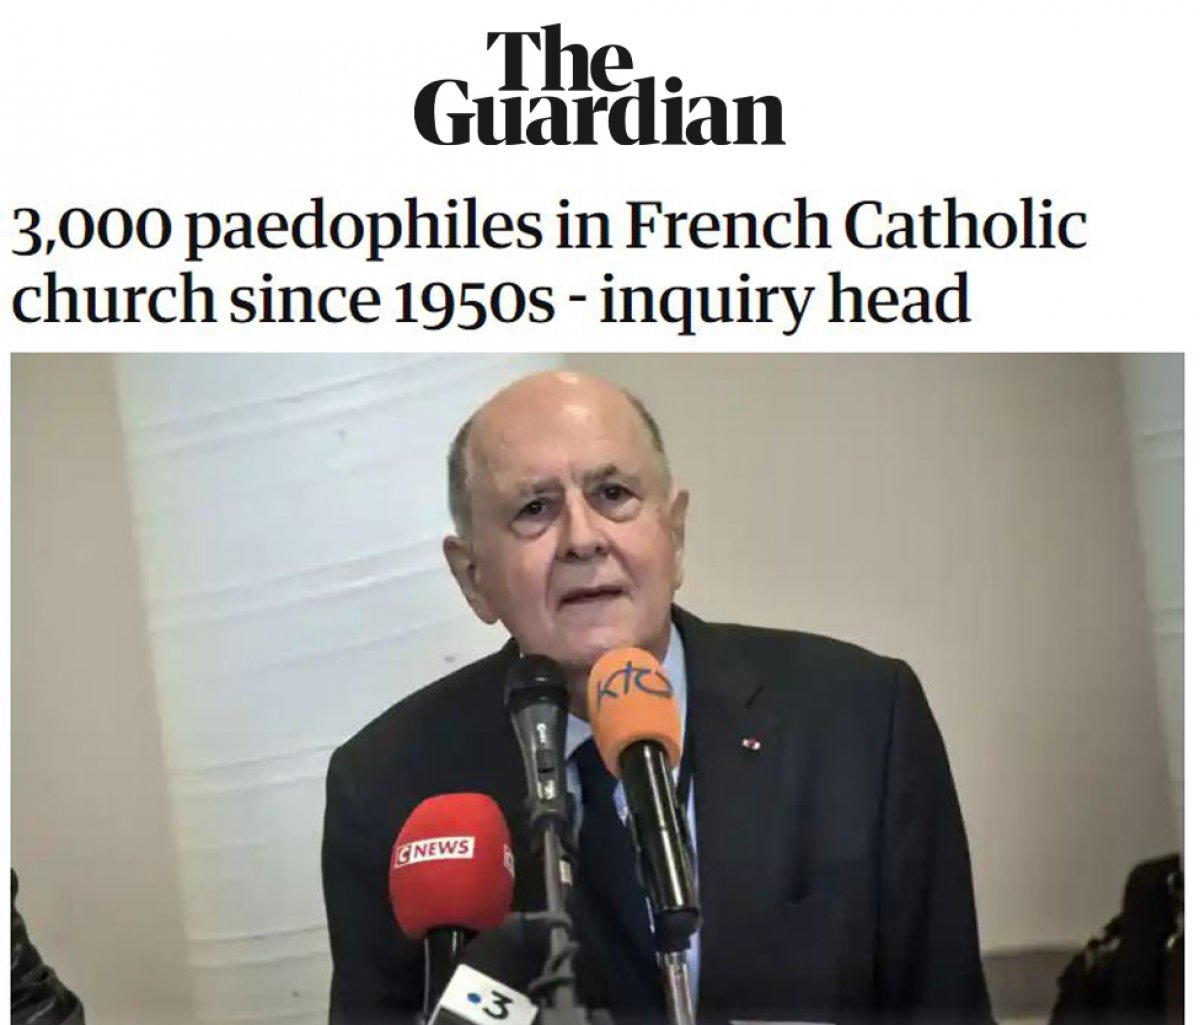 Fransa da çocukların kiliselerde istismara uğraması Avrupa nın gündeminde #5